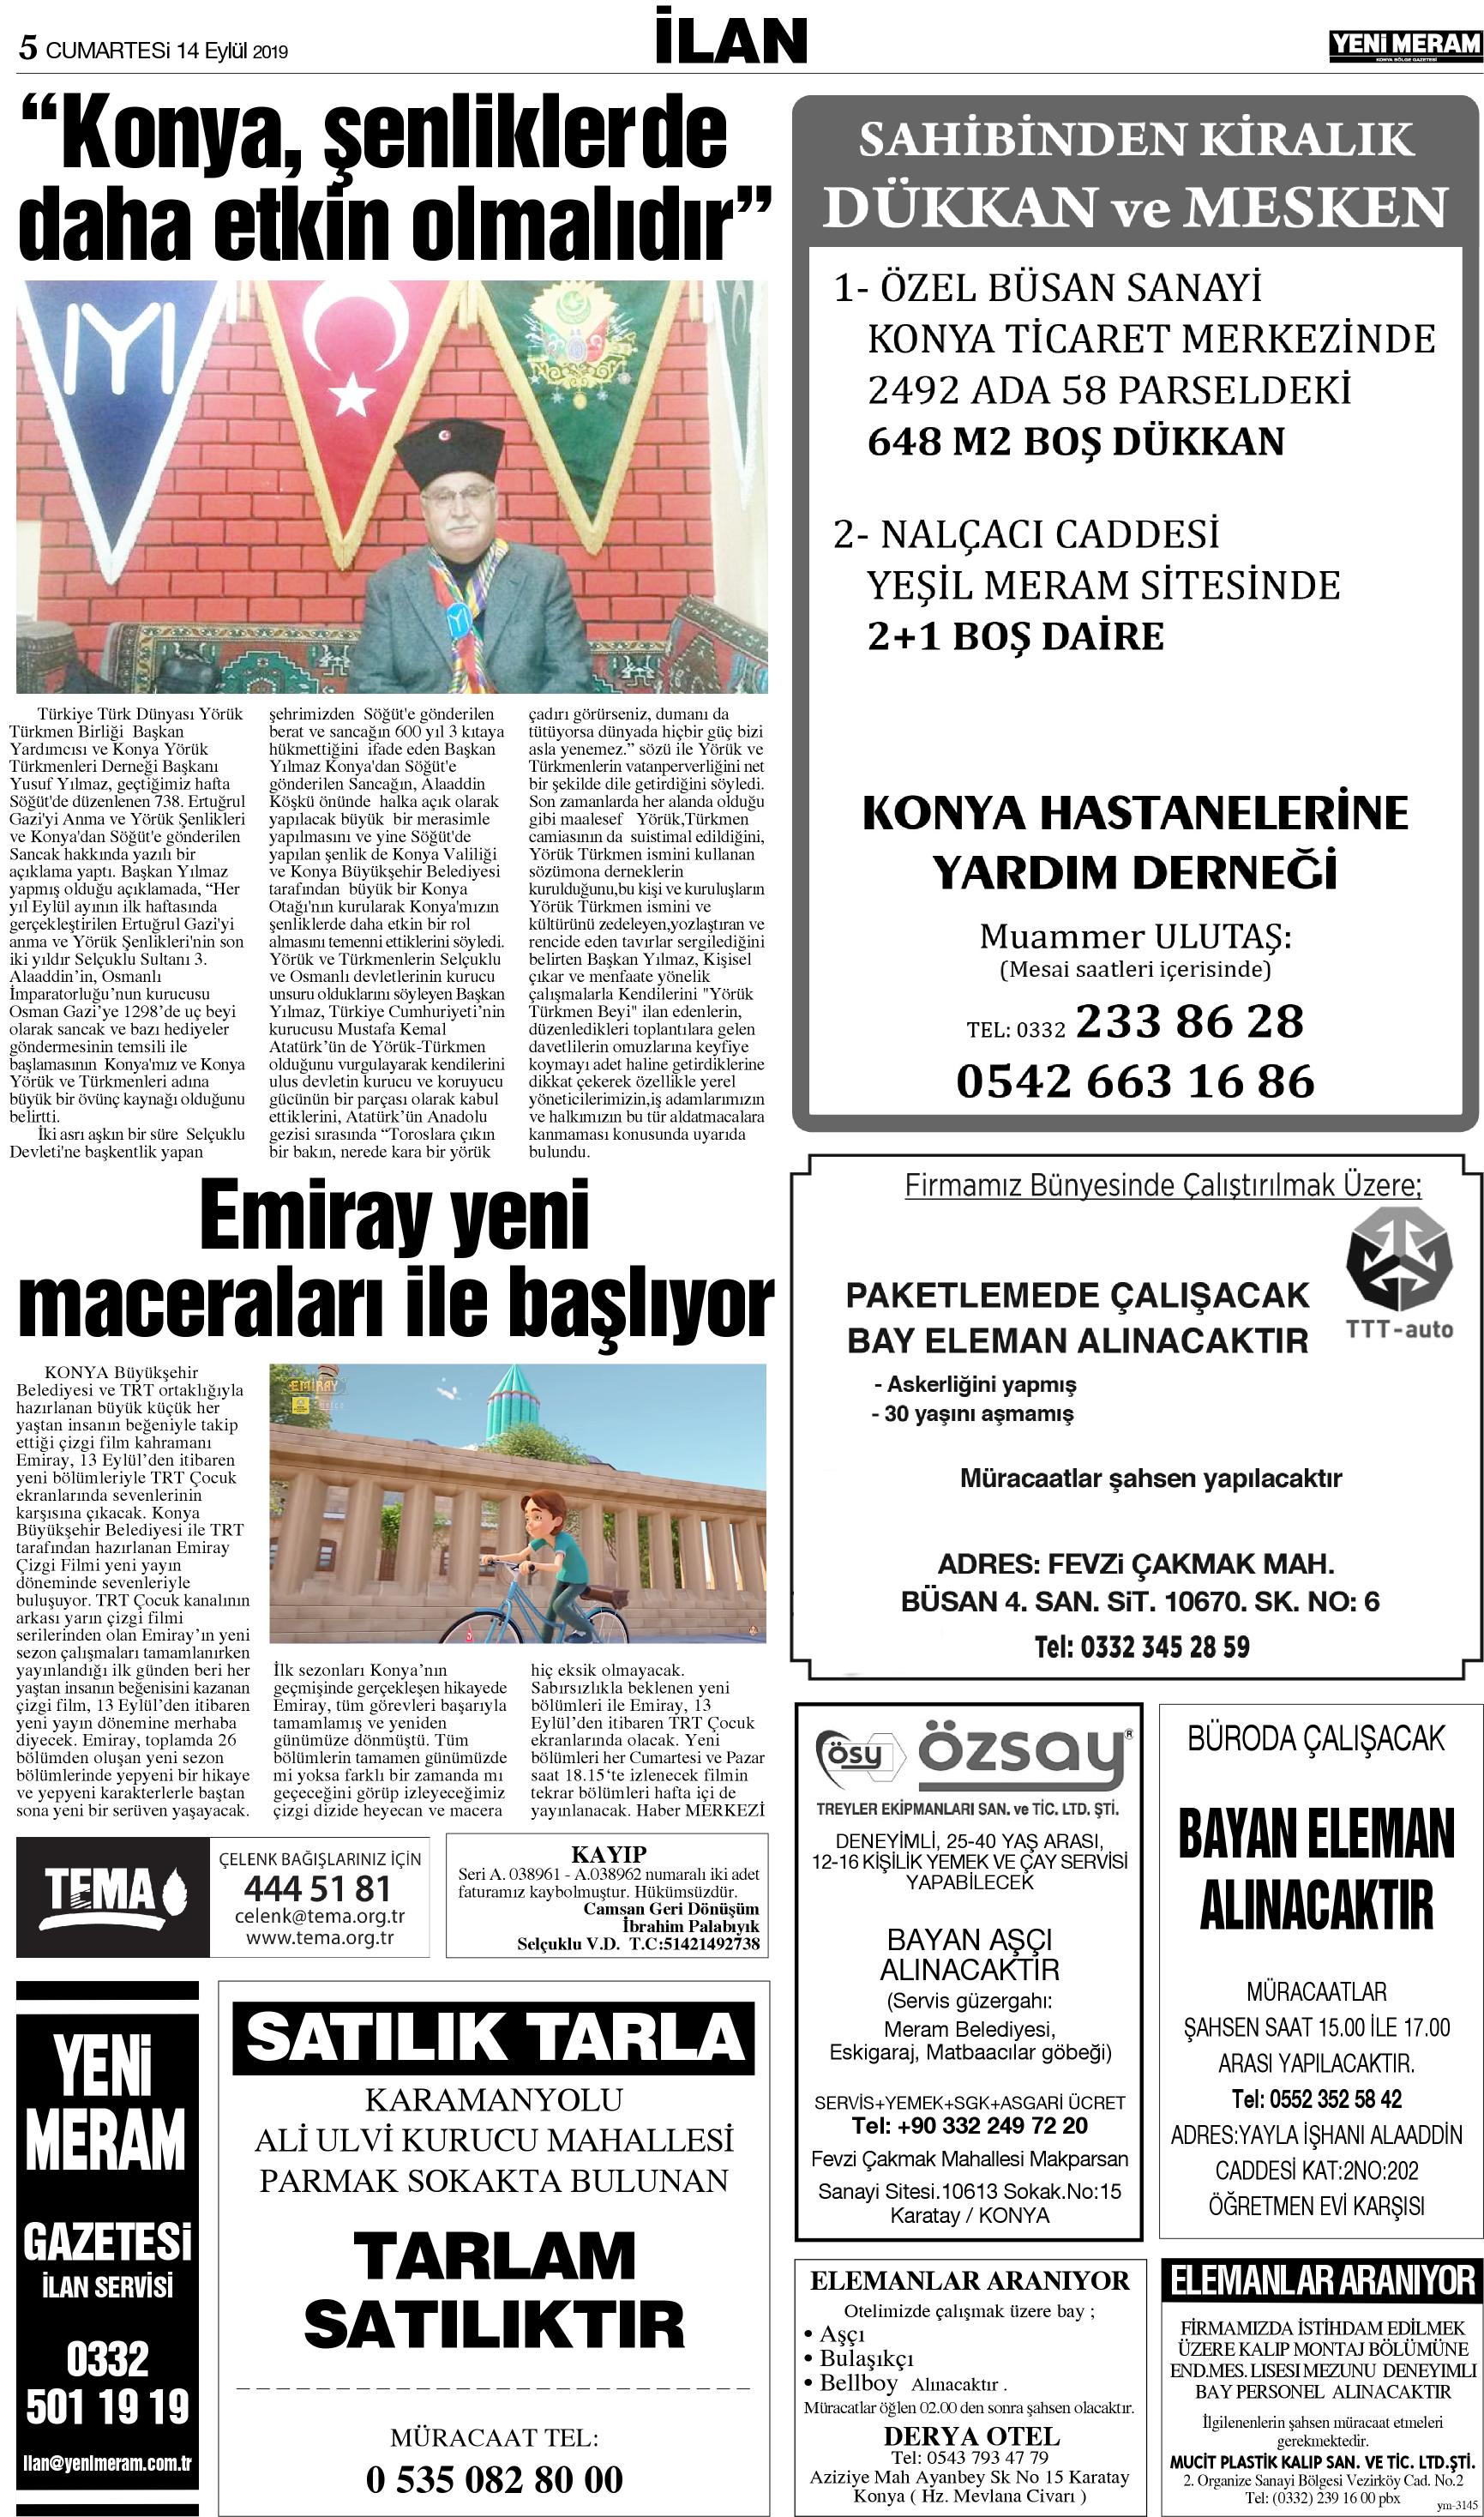 14 Eylül 2019 Yeni Meram Gazetesi